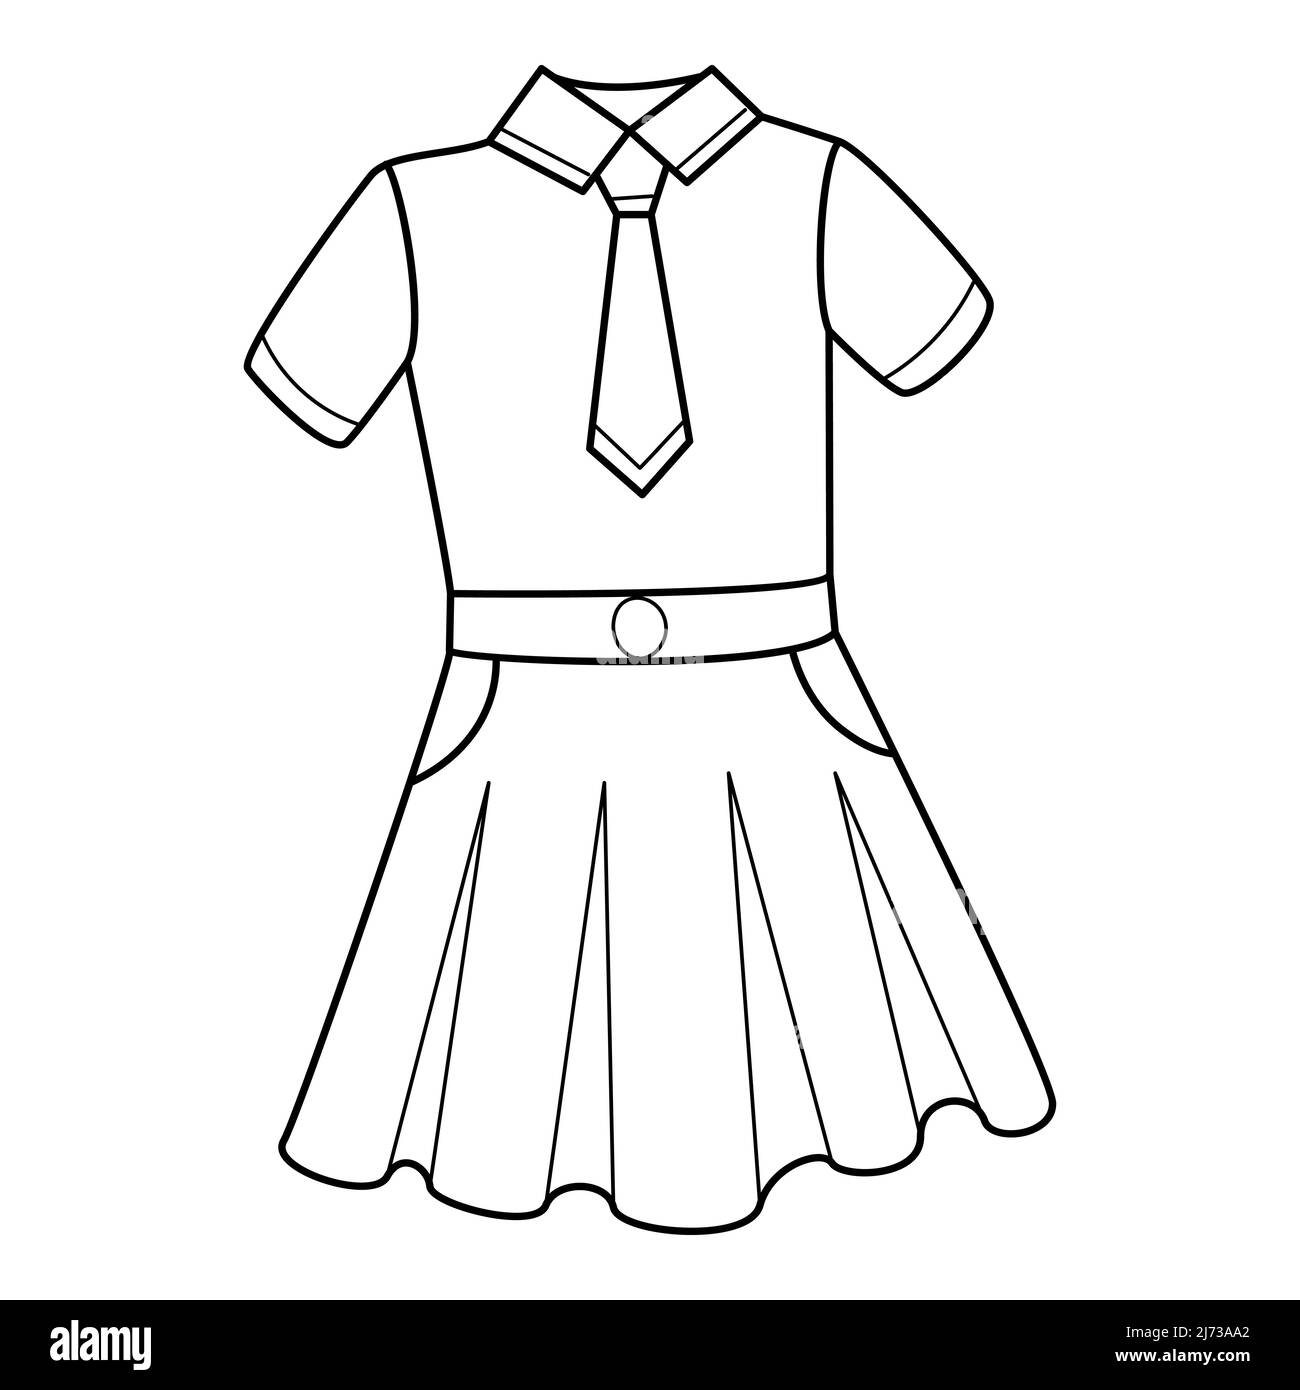 Schuluniformen für Mädchen. Eine Bluse mit Krawatte und Rock. Kleidung. Doodle. Handgezeichnete schwarz-weiße Vektorgrafik. Die Designelemente sind iso Stock Vektor